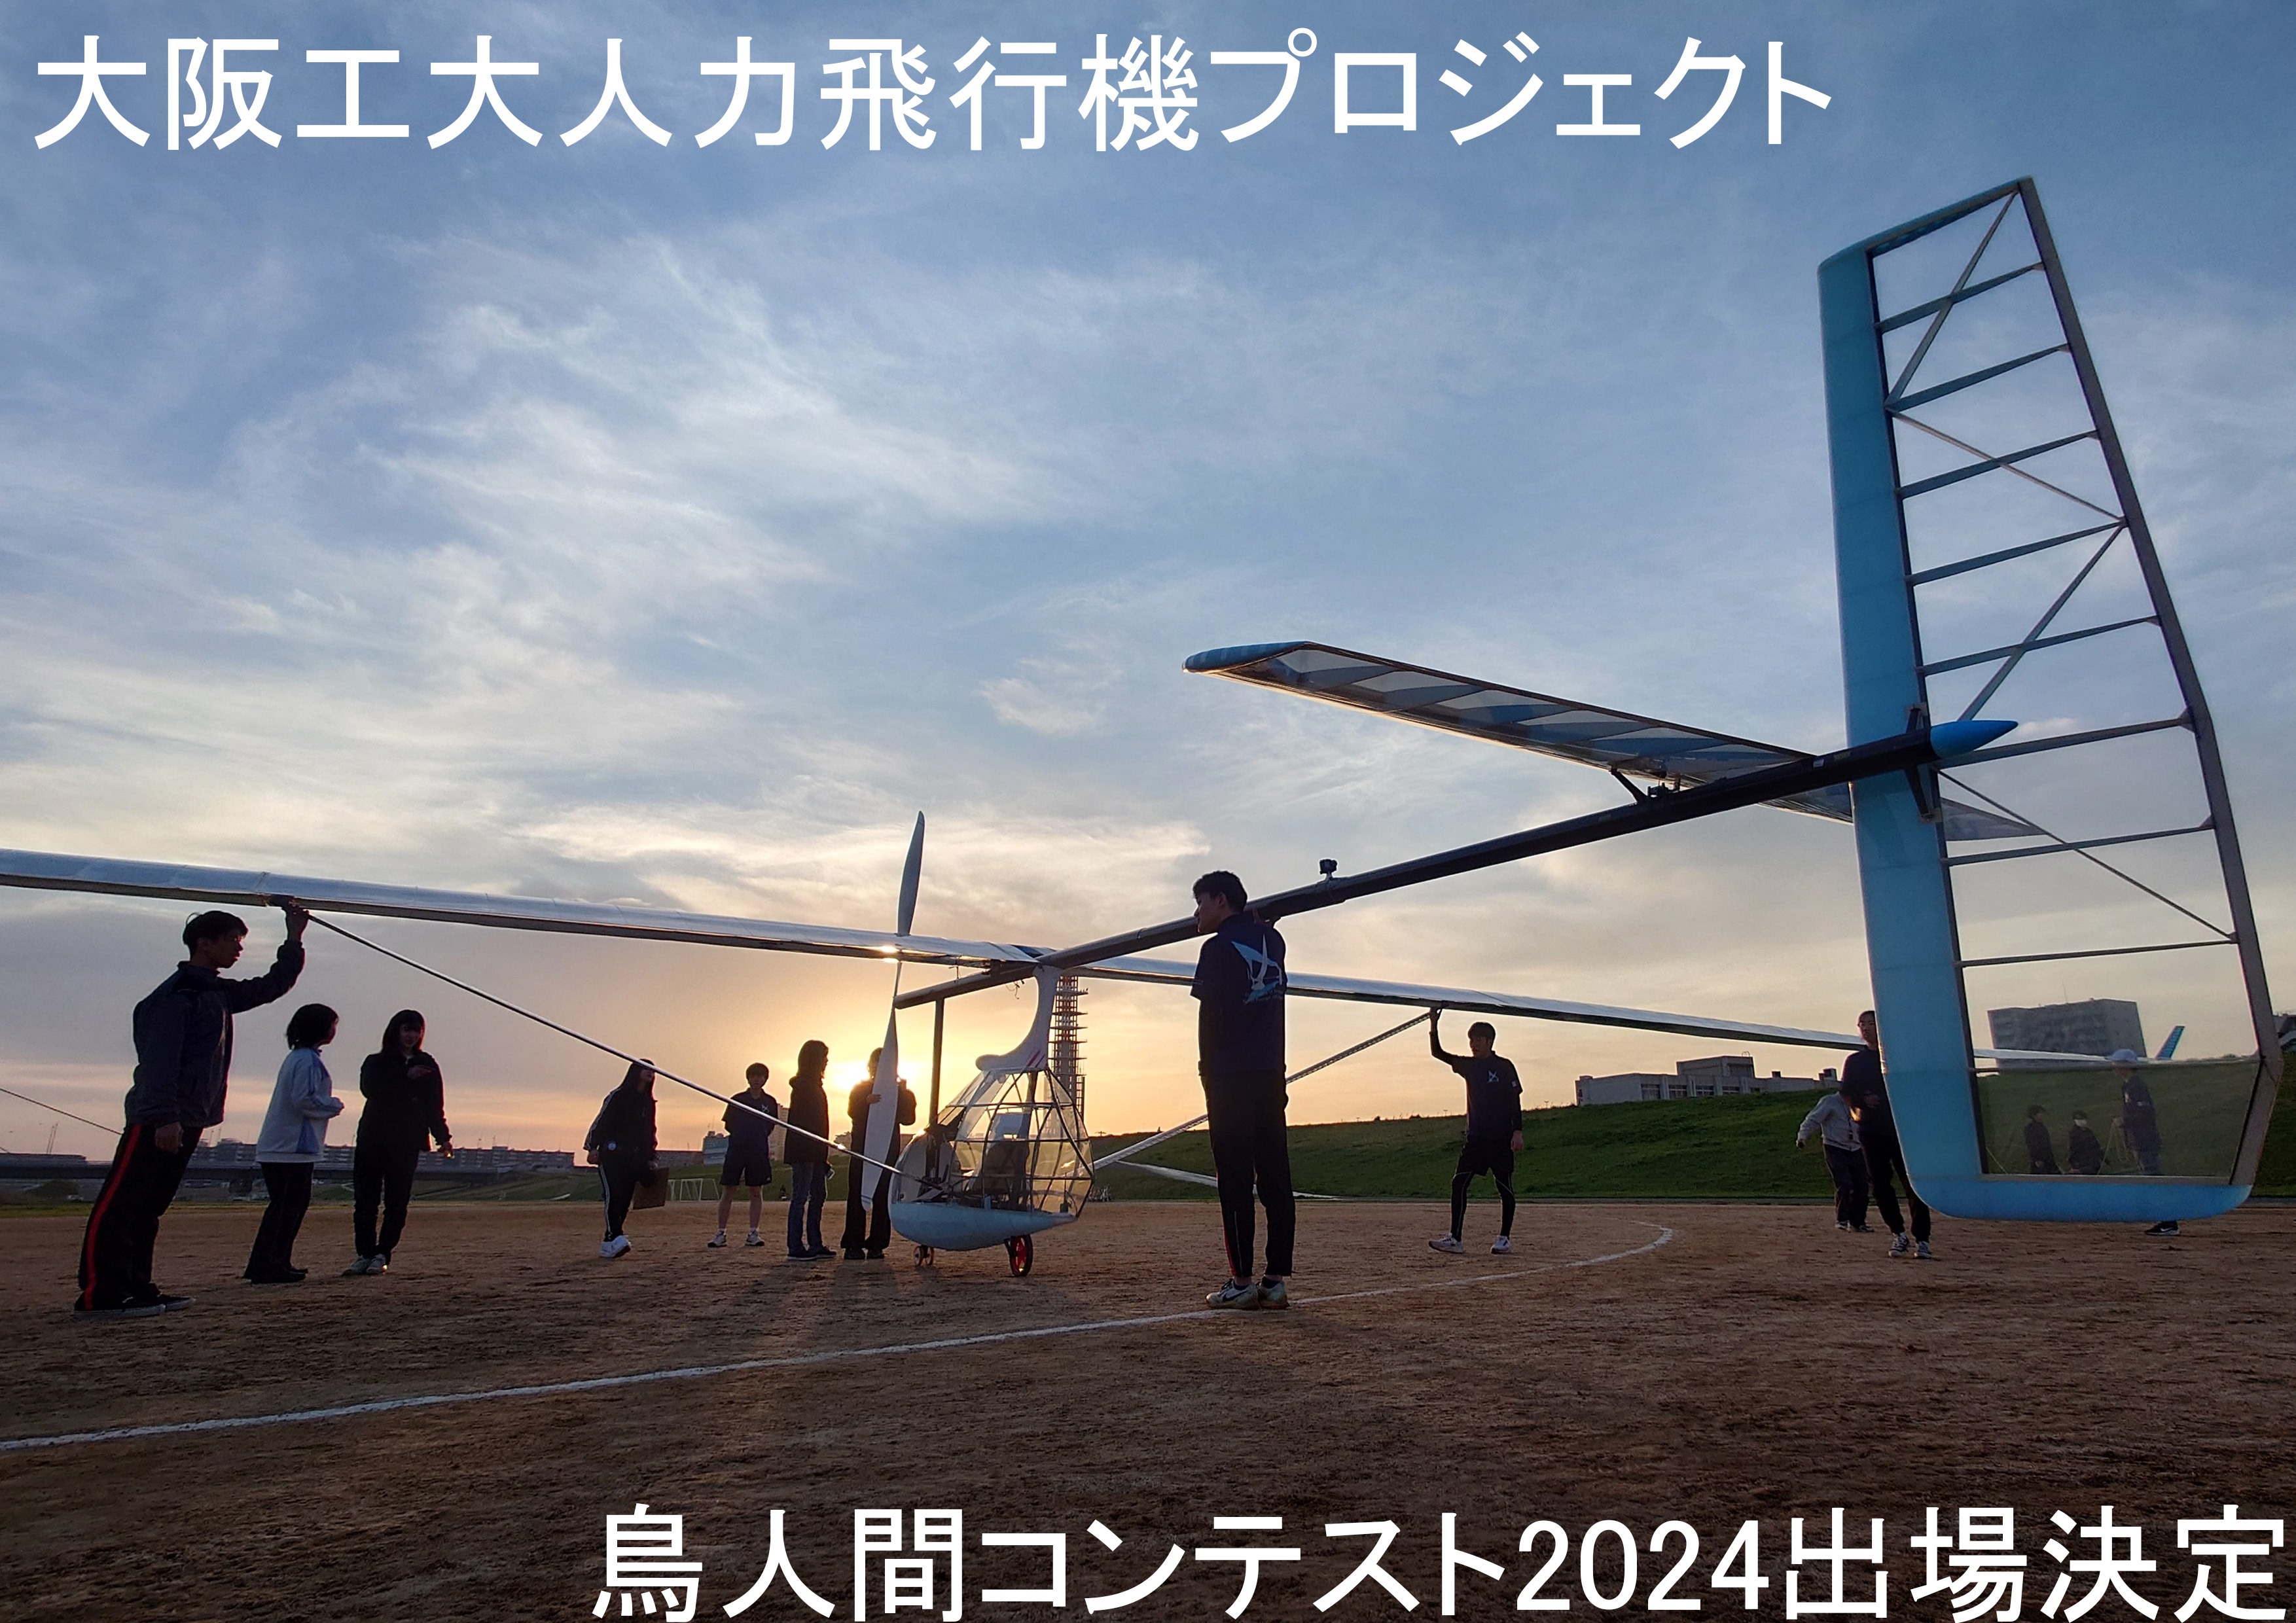 大阪工業大学人力飛行機プロジェクト